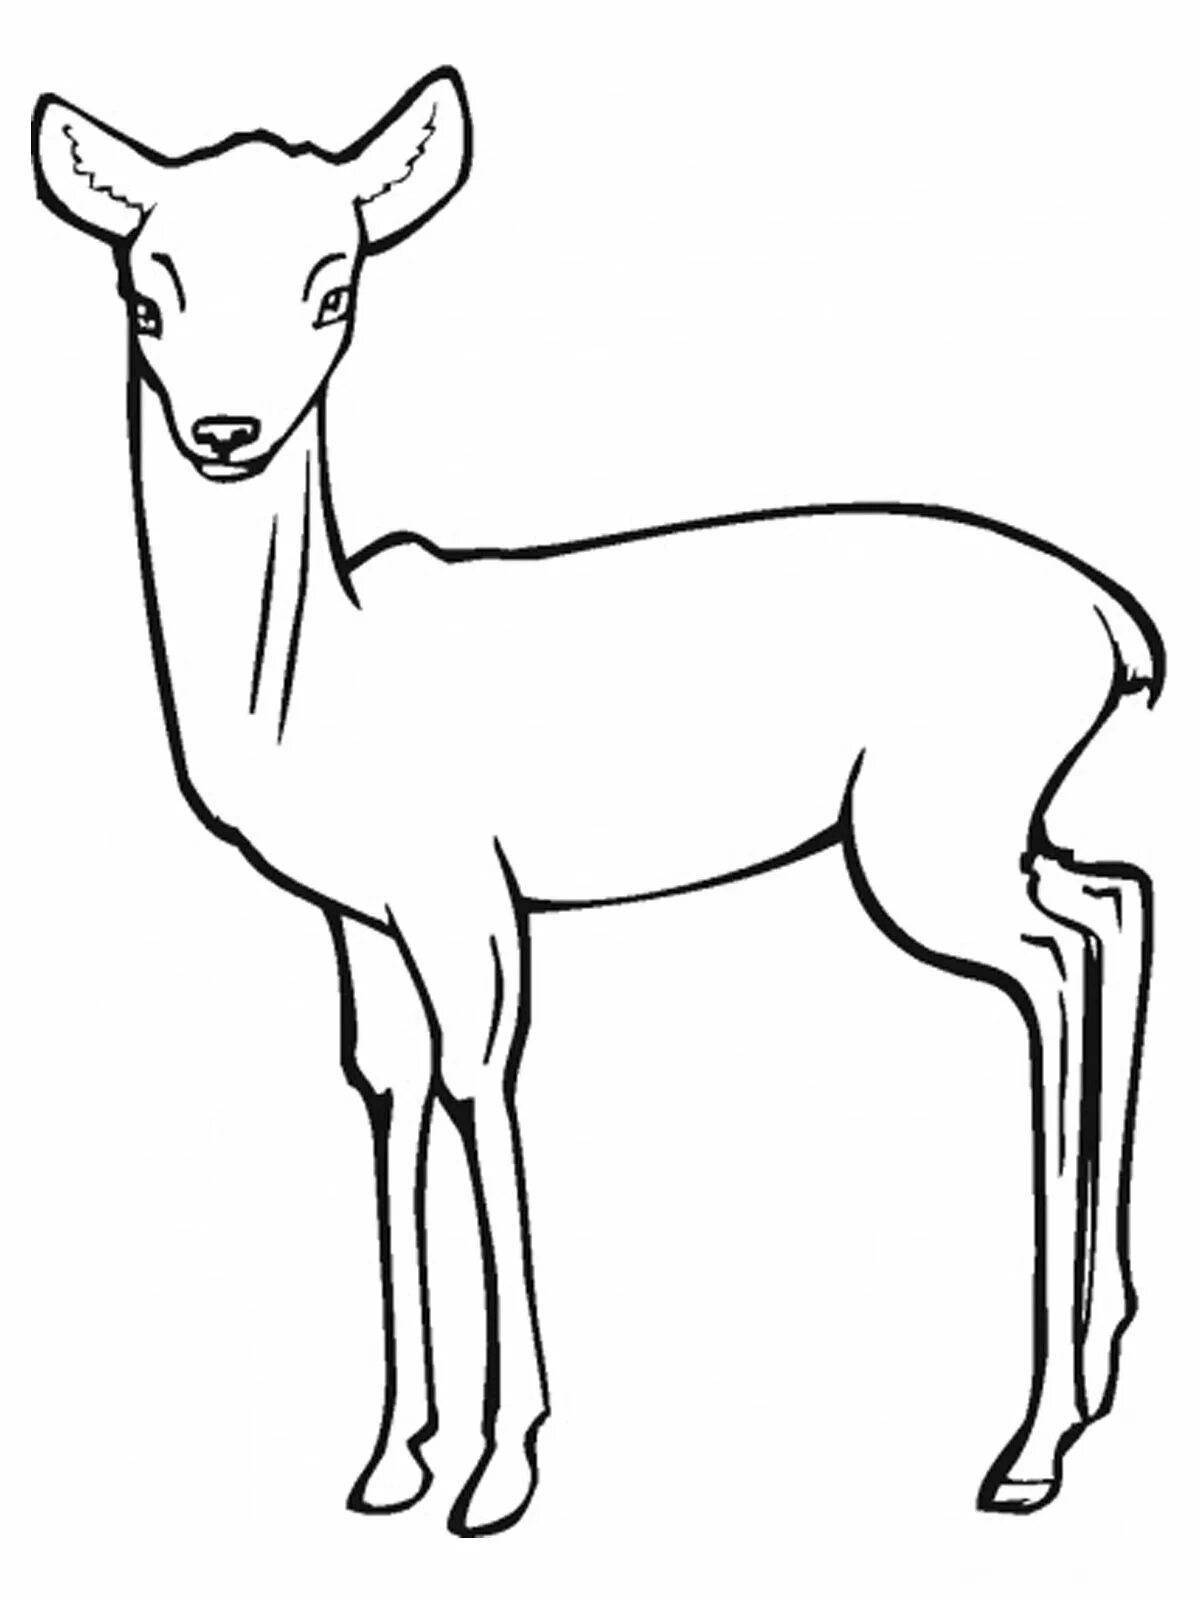 Brilliant Siberian roe deer coloring book